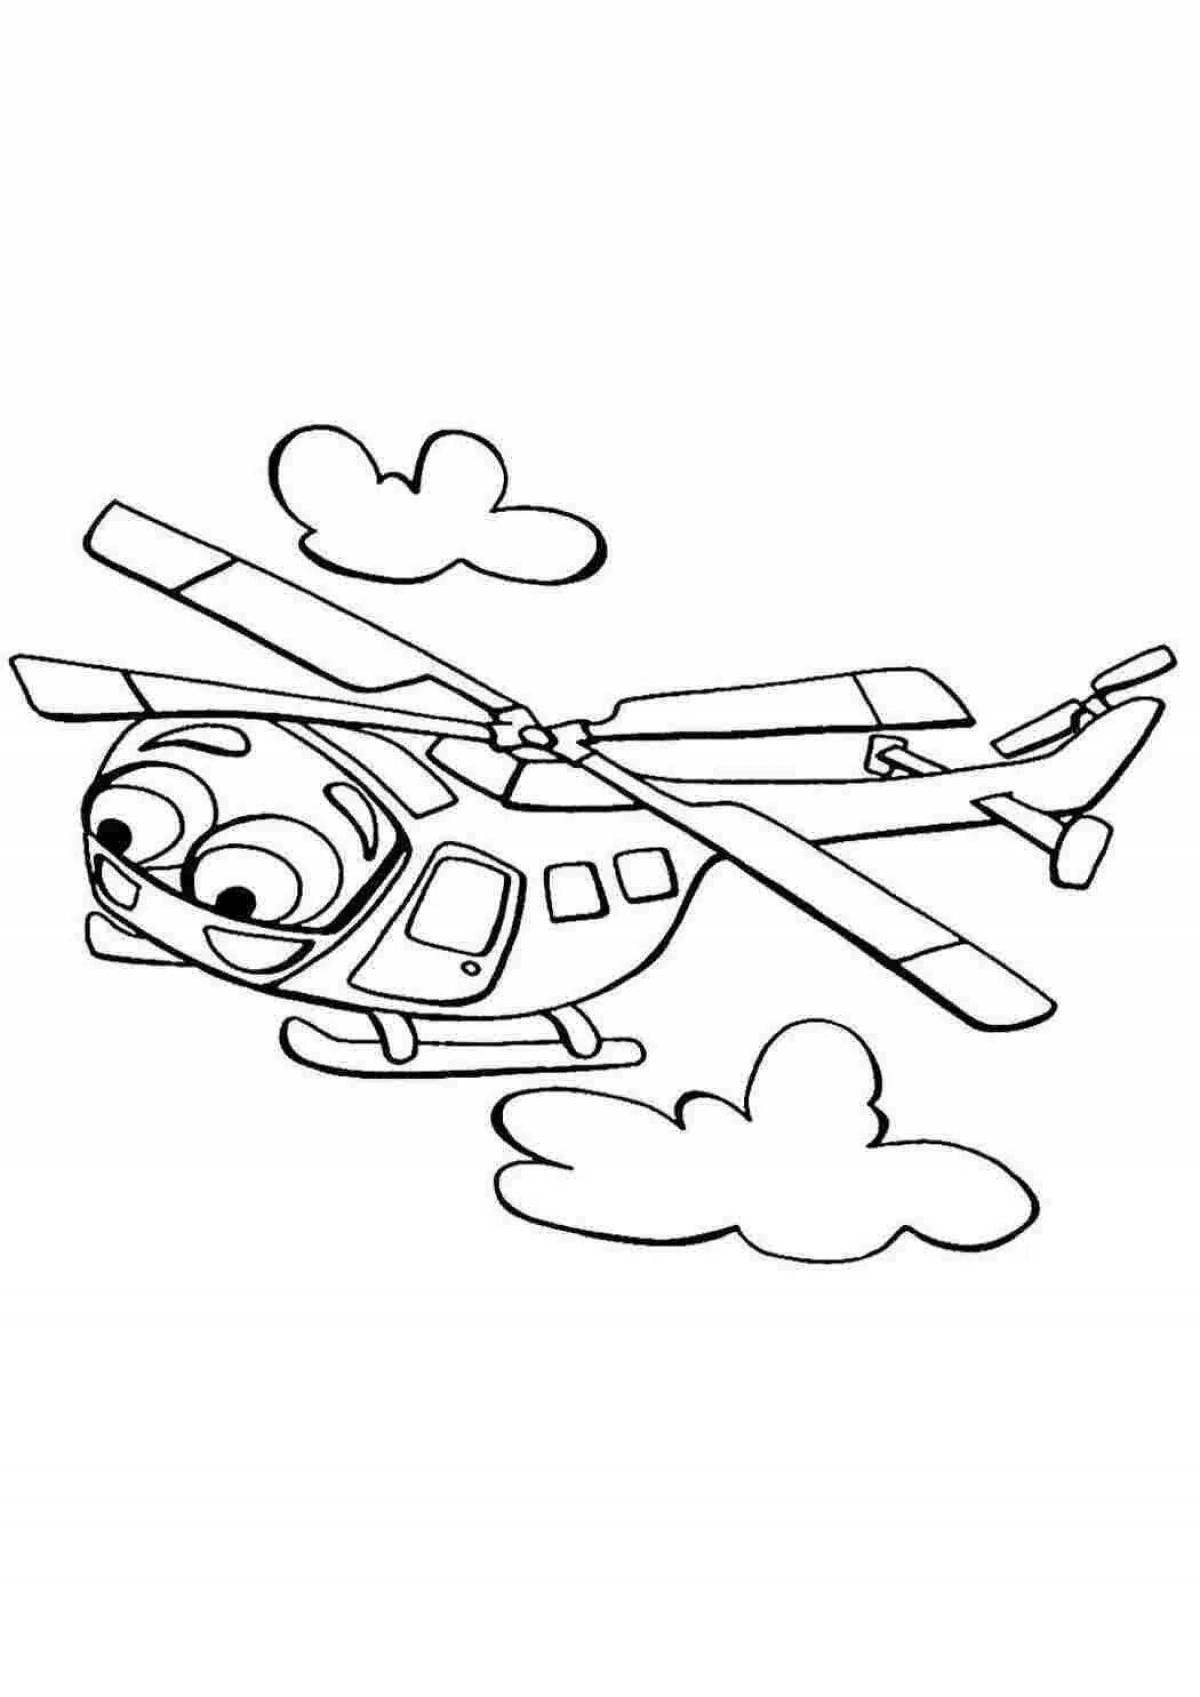 Восхитительная раскраска вертолета для детей 7 лет